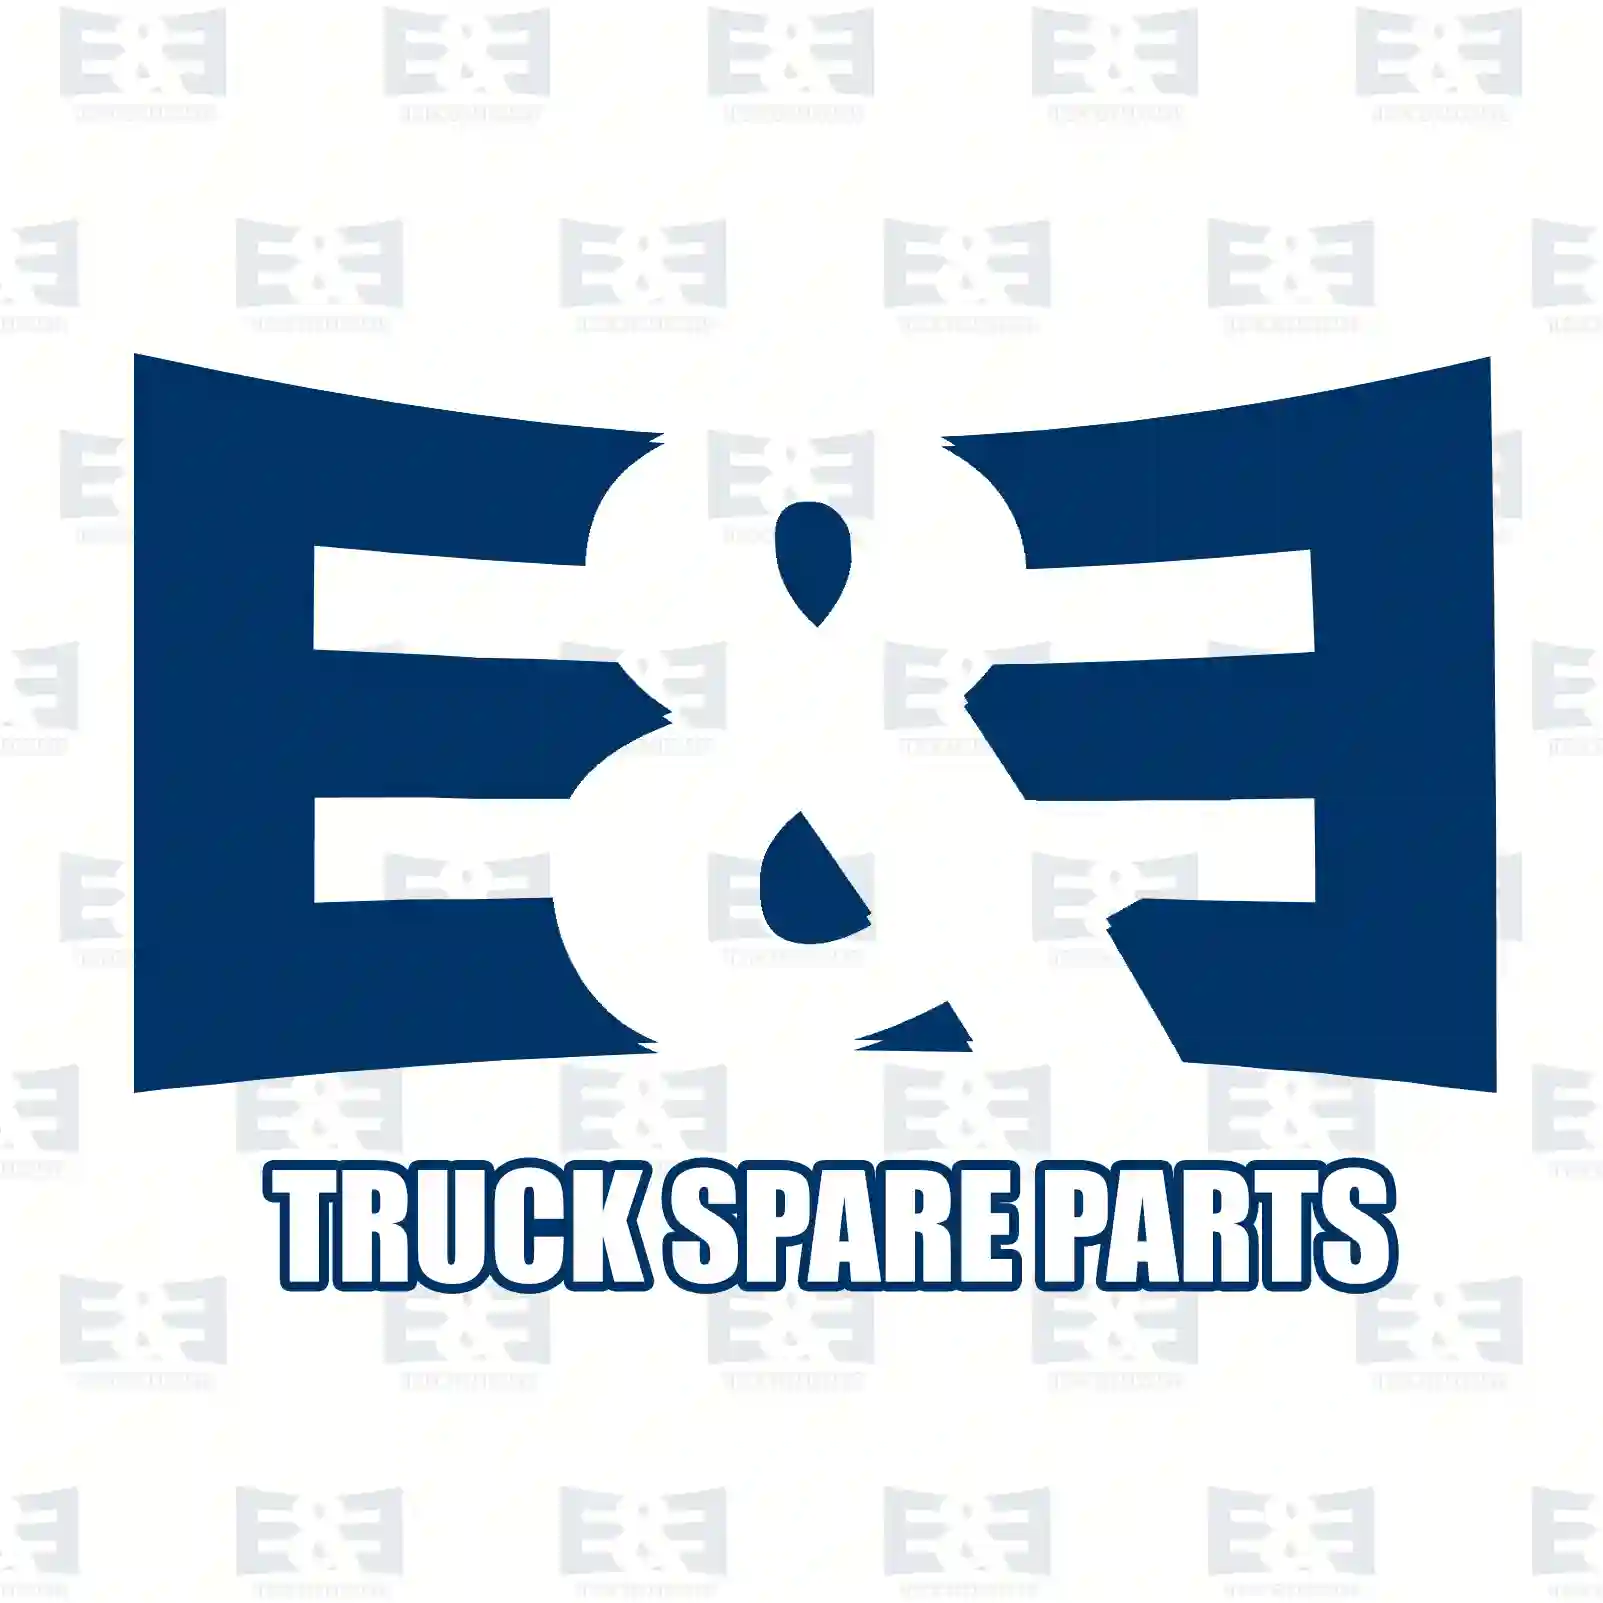 Wiper linkage, with motor, 2E2293166, 81264006355, 81264006368, 81264016141S1, 81264116119S1, 81264016141 ||  2E2293166 E&E Truck Spare Parts | Truck Spare Parts, Auotomotive Spare Parts Wiper linkage, with motor, 2E2293166, 81264006355, 81264006368, 81264016141S1, 81264116119S1, 81264016141 ||  2E2293166 E&E Truck Spare Parts | Truck Spare Parts, Auotomotive Spare Parts